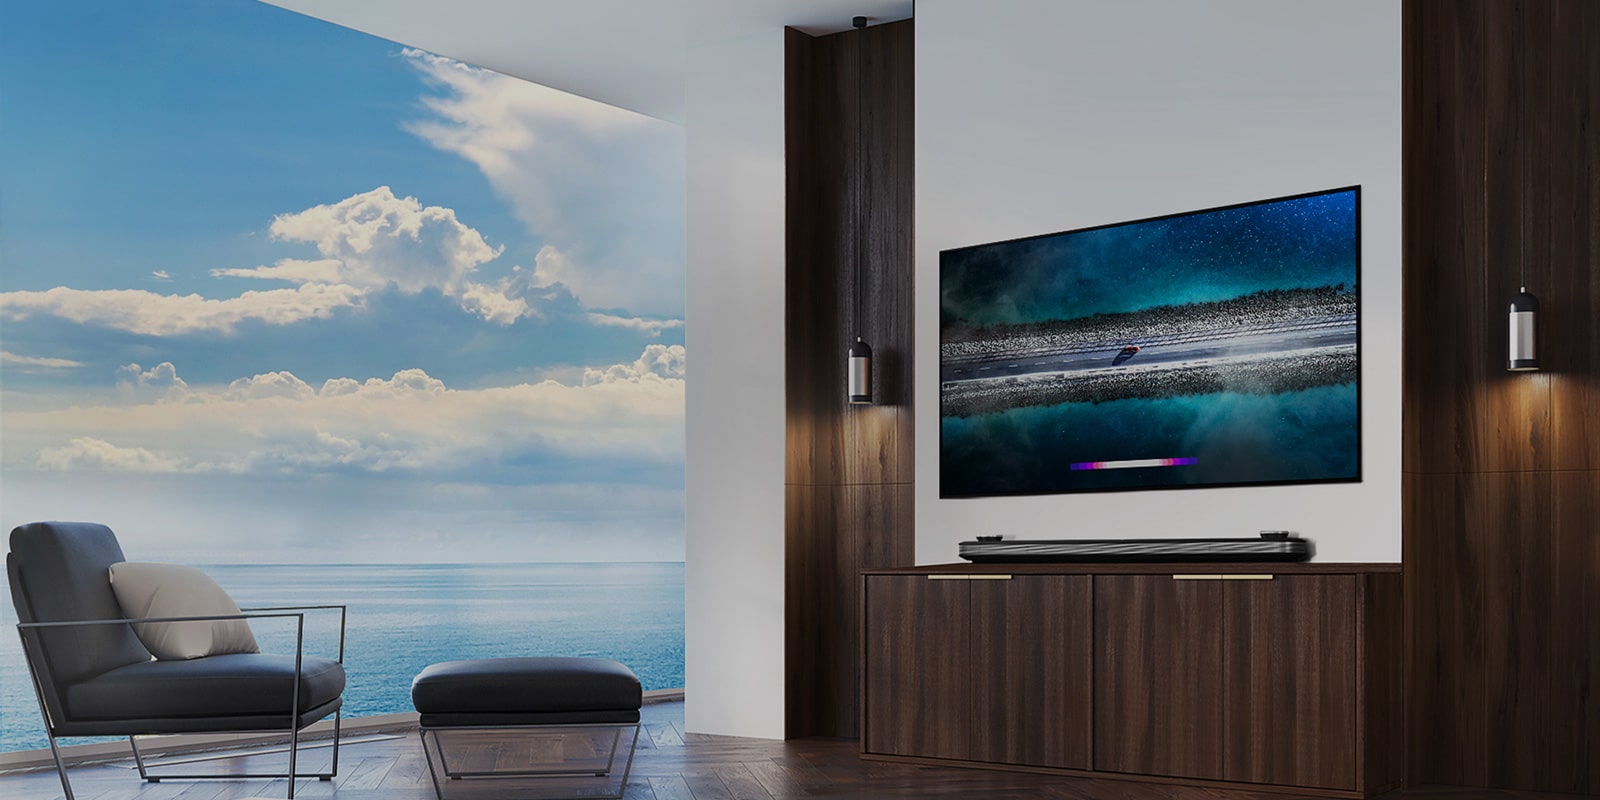 Televízor LG SIGNATURE OLED TV W9 je zavesený na stene a priamo pred televízorom je položená hraba s modrou oblohou nad oknom.